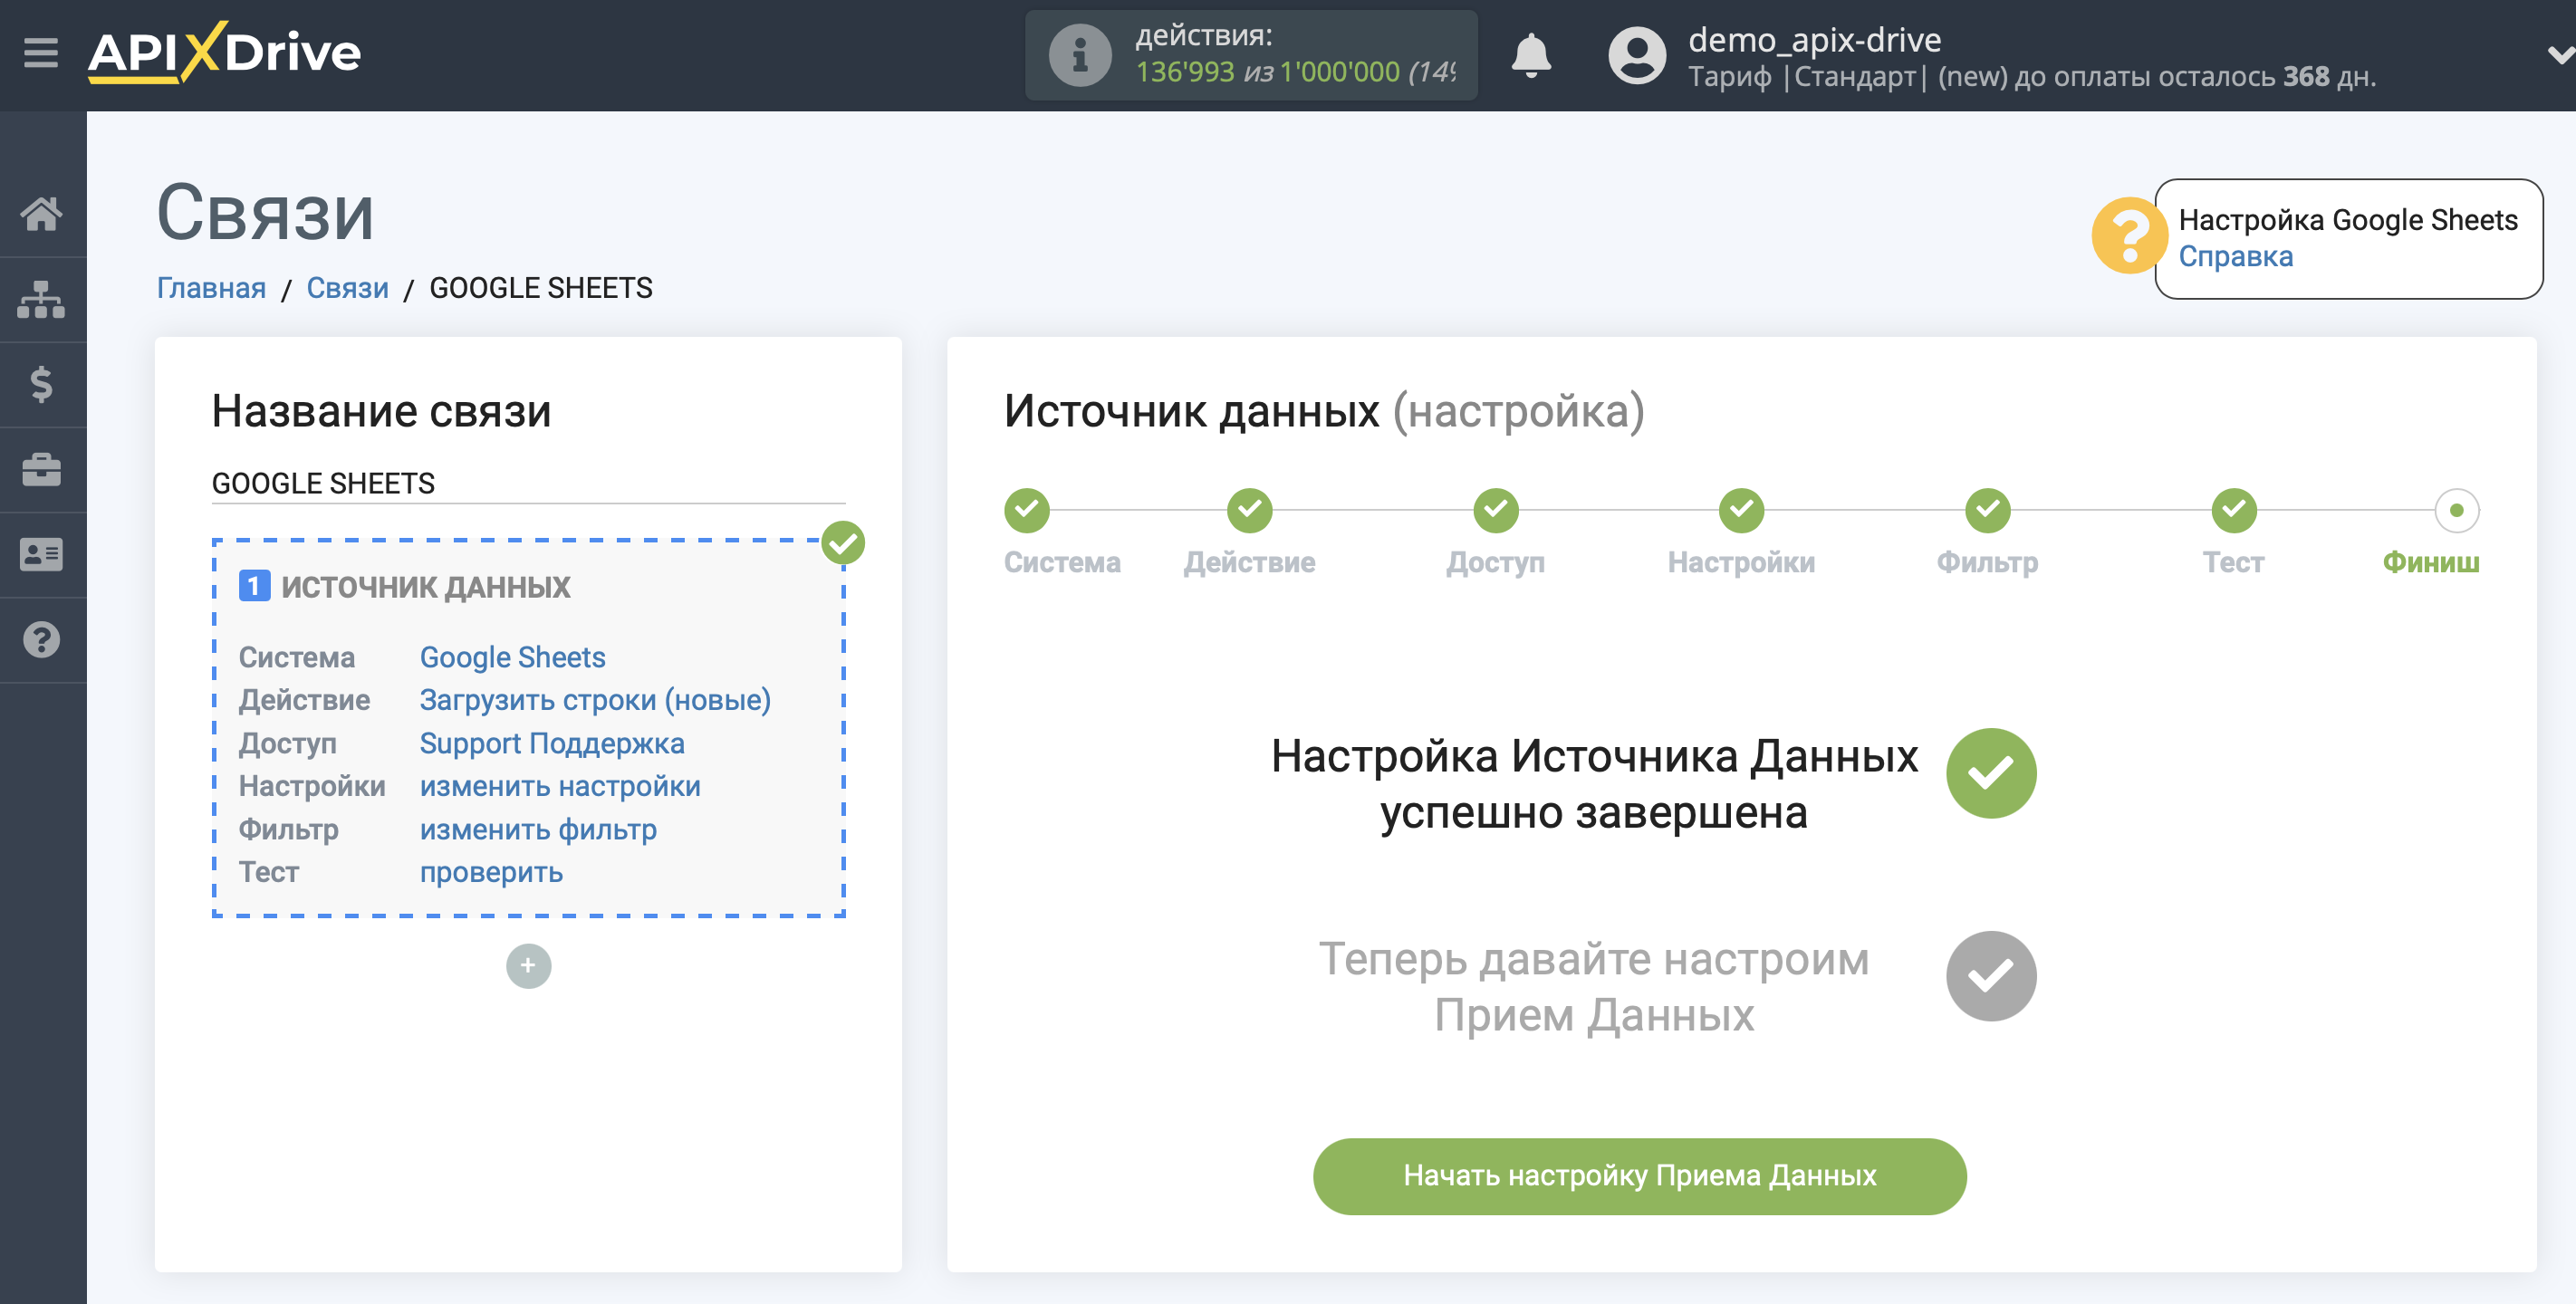 Налаштування Приймача даних UKR.NET | Перехід до налаштування Приймача даних